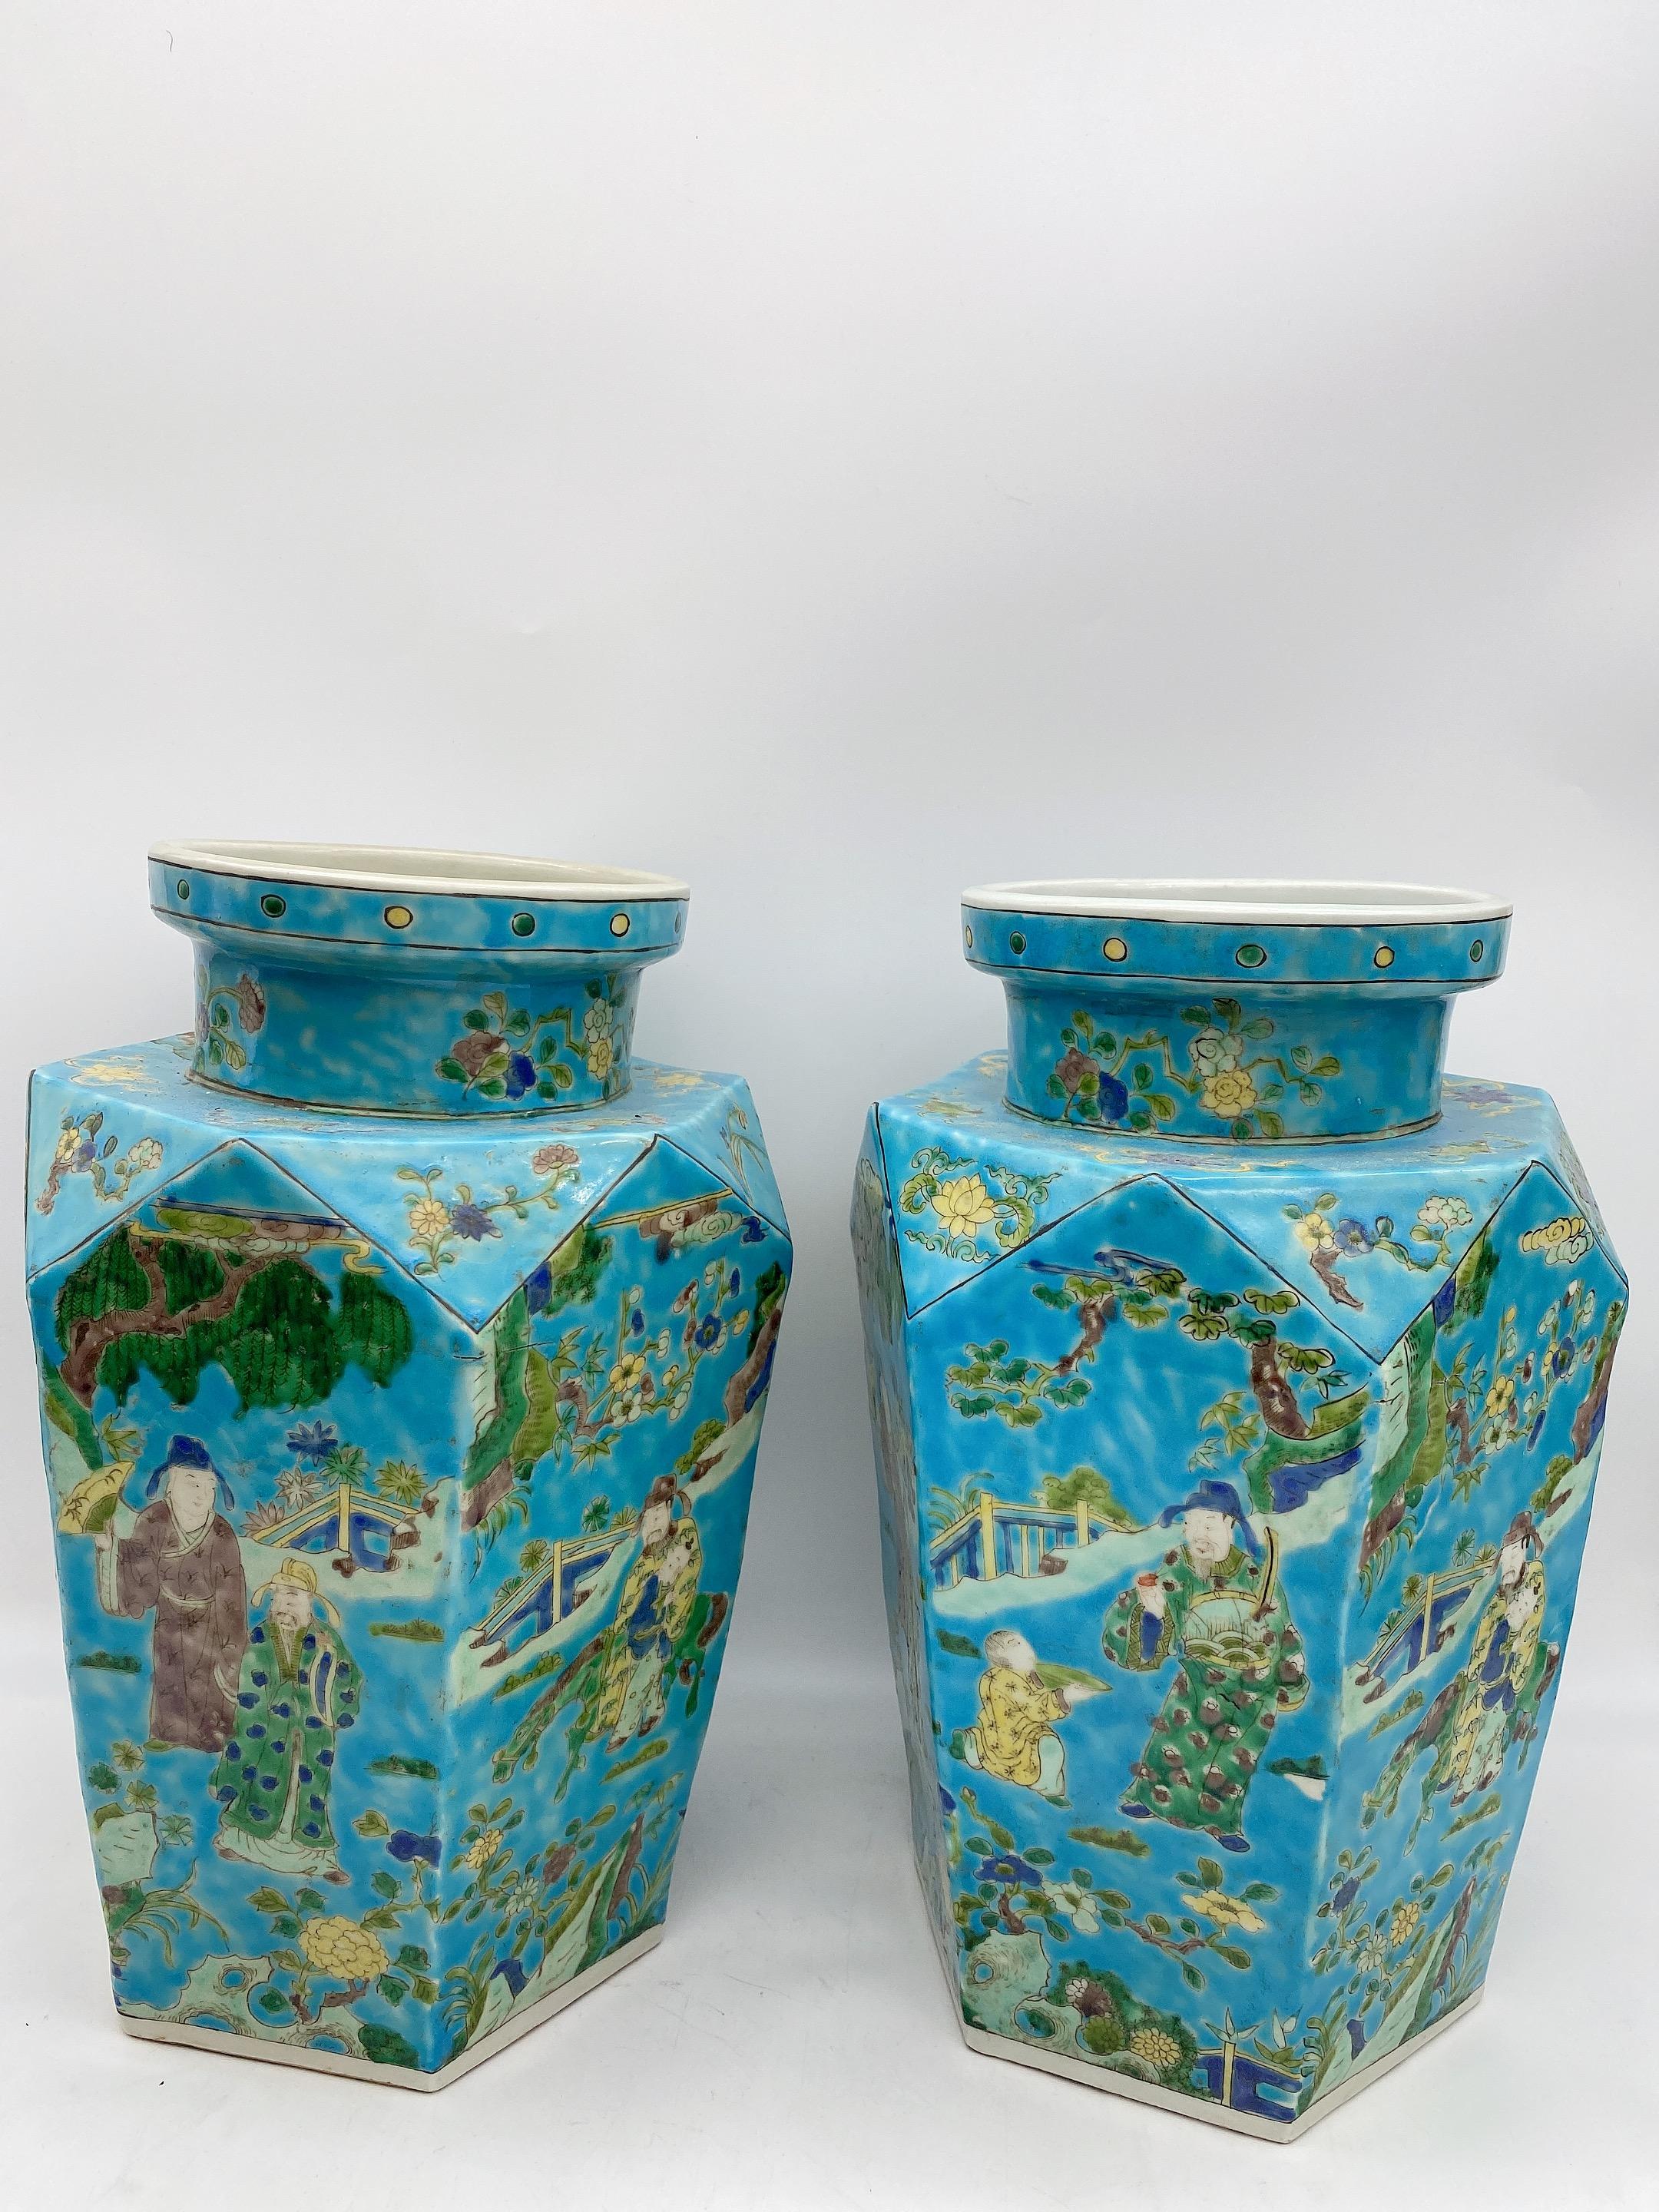 Une paire de vases anciens en porcelaine chinoise avec une très belle peinture à la main. Excellent état, mesures : 12